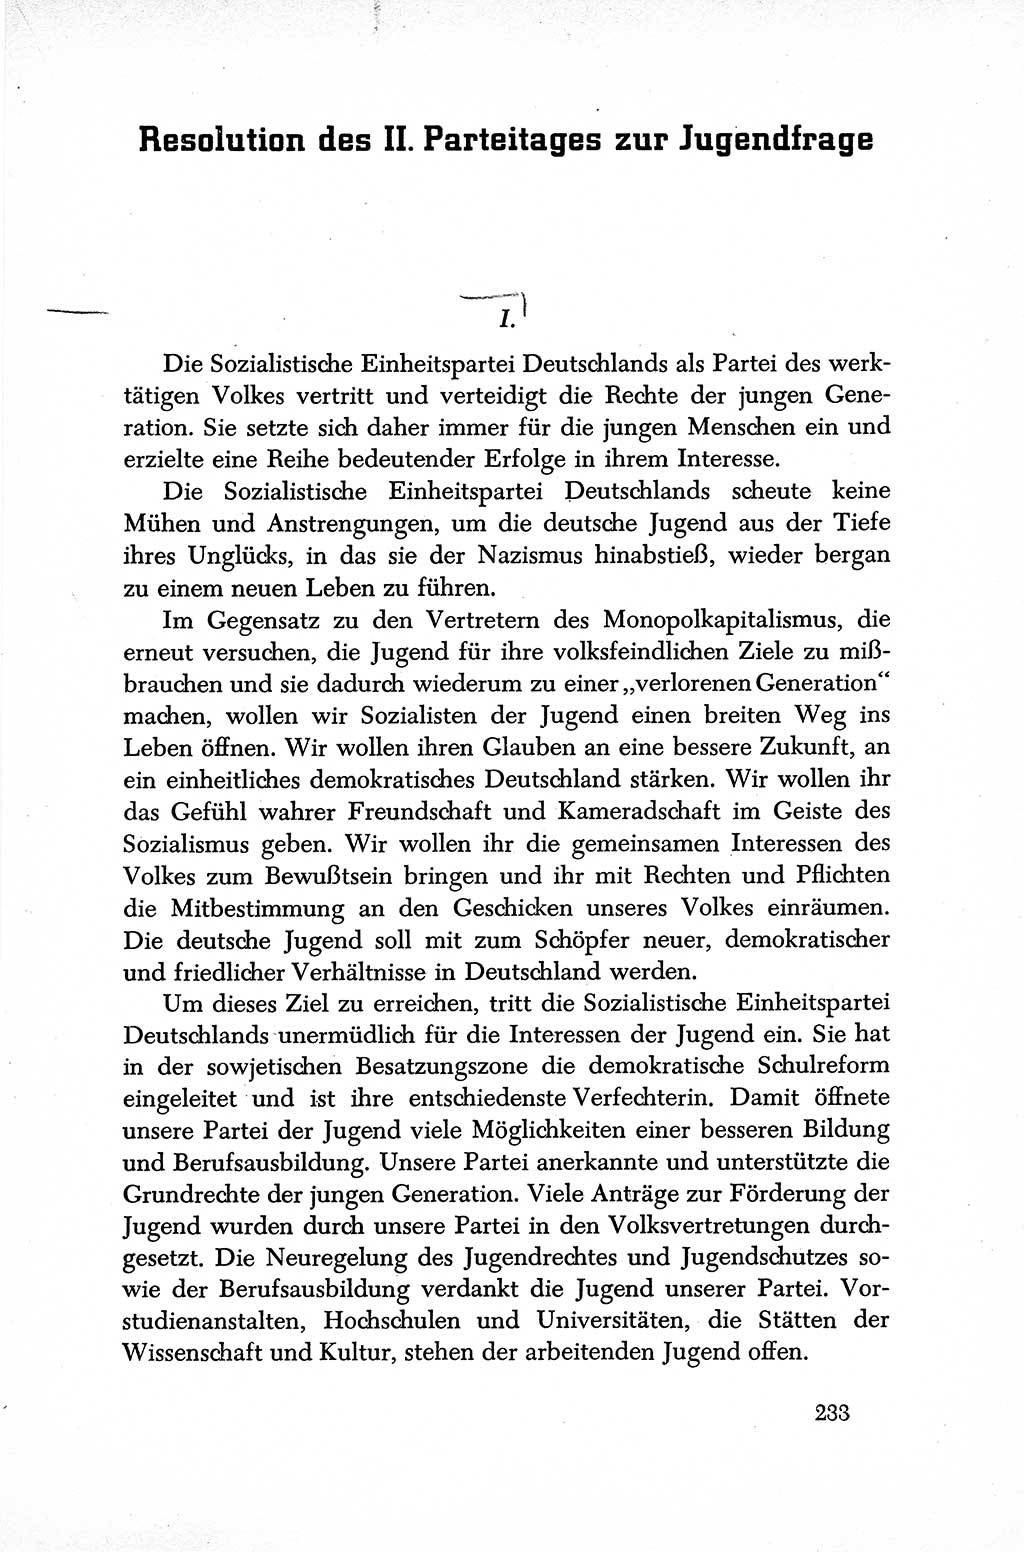 Dokumente der Sozialistischen Einheitspartei Deutschlands (SED) [Sowjetische Besatzungszone (SBZ) Deutschlands] 1946-1948, Seite 233 (Dok. SED SBZ Dtl. 1946-1948, S. 233)